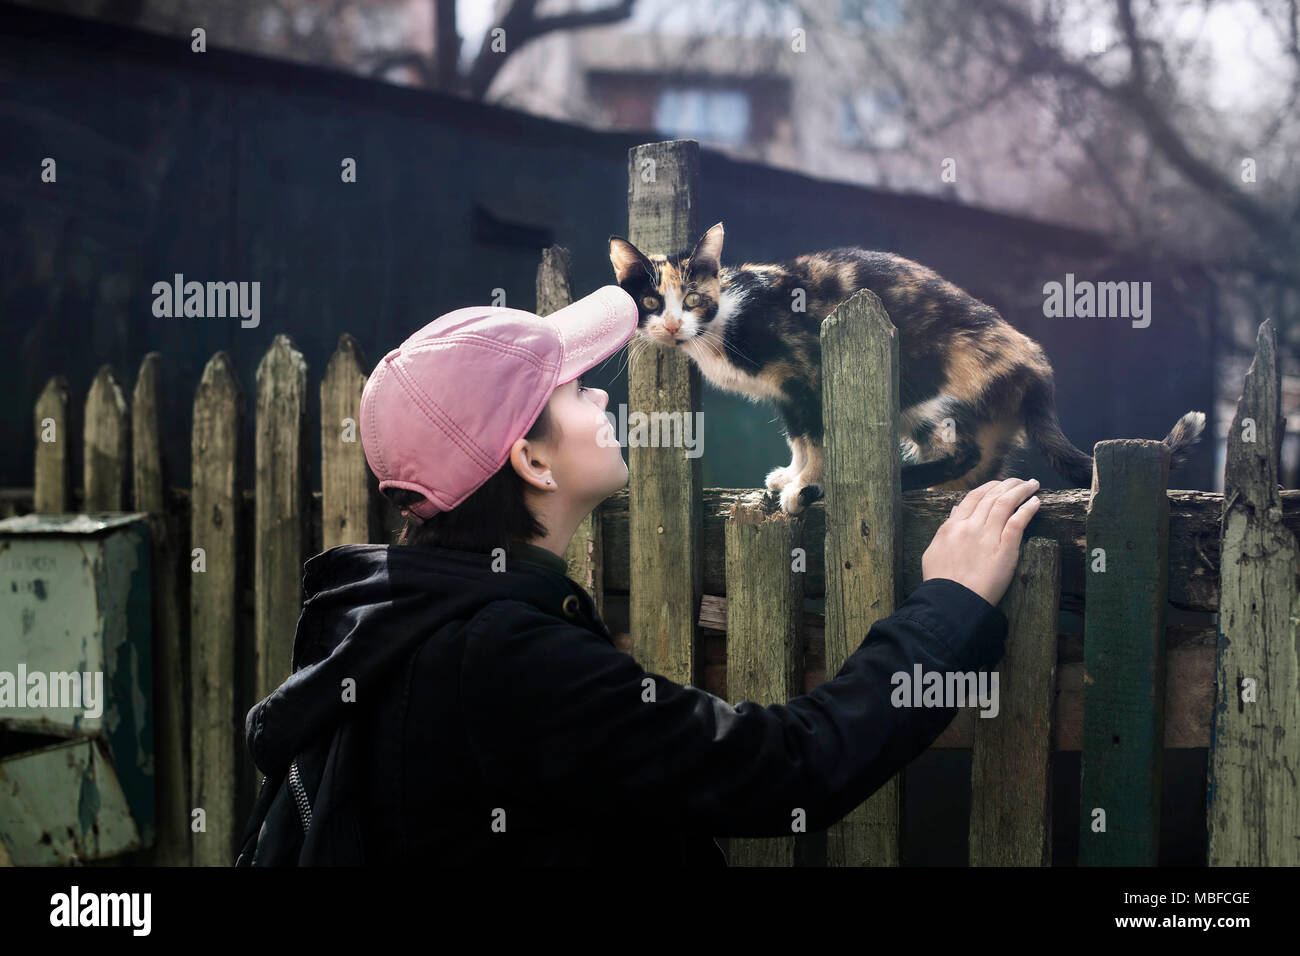 Ein Mädchen in einem rosa Baseball Cap und eine schwarze Jacke neben eine streunende Katze auf einem alten grünen Zaun. Minsk, Weißrussland. Stockfoto